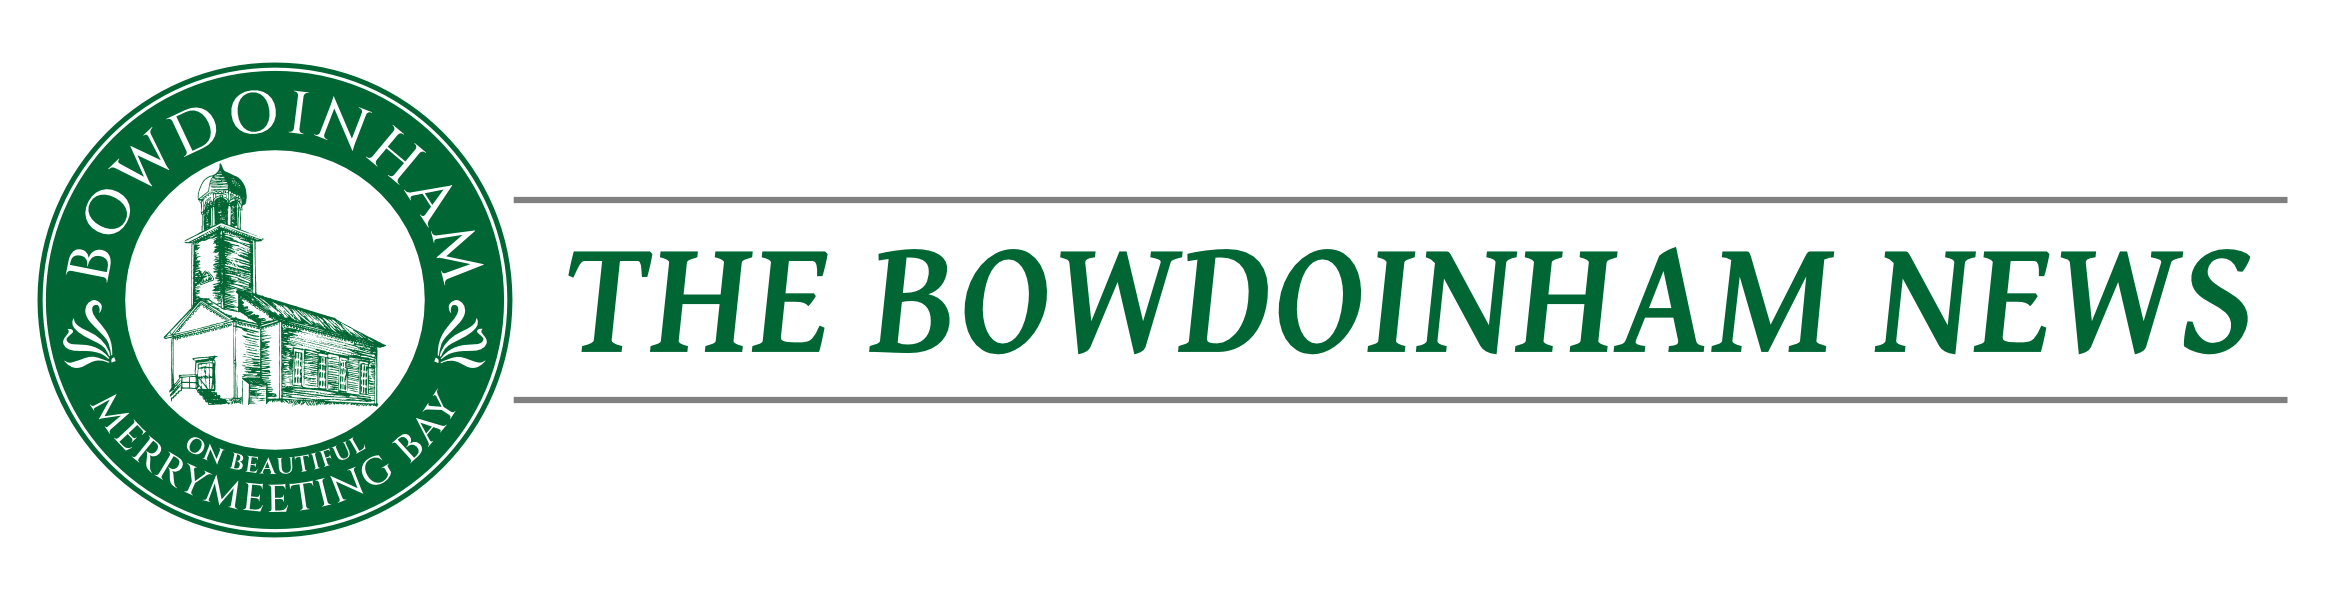 The Bowdoinham News